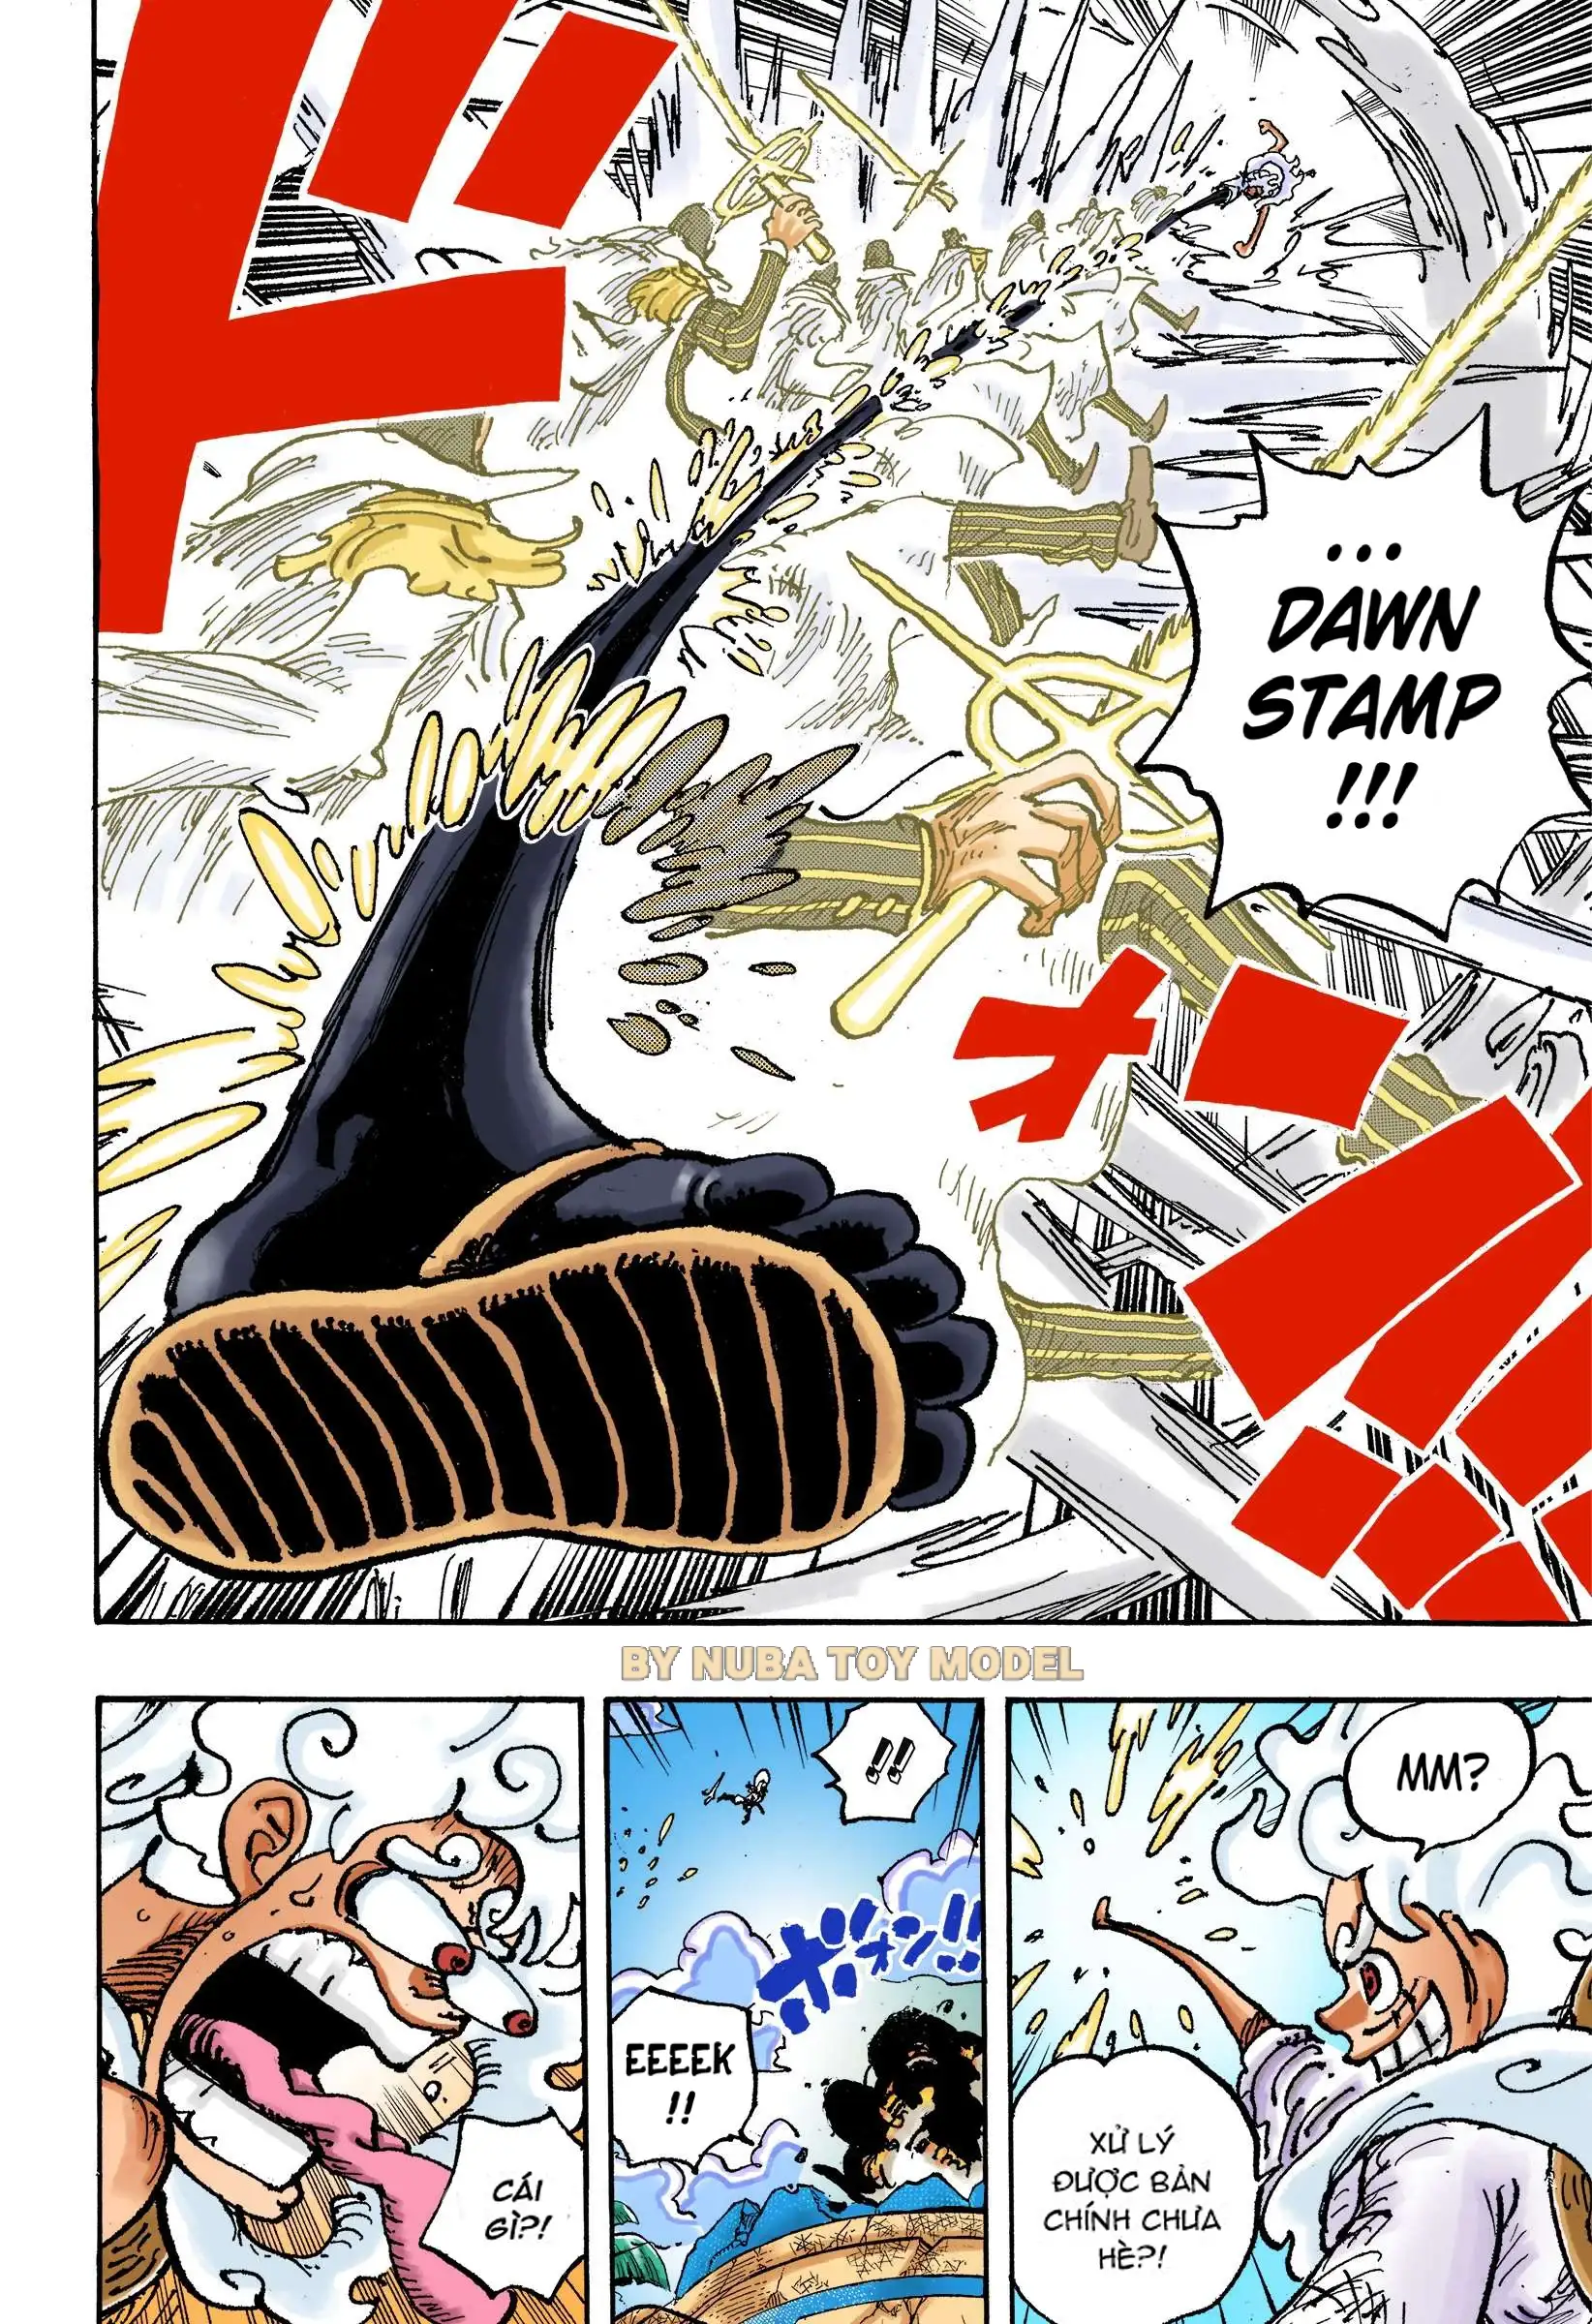 Luffy đáp trả bằng cách sử dụng Gum-Gum Dawn stamp để tiêu diệt các bản sao chỉ bằng 1 đòn, nhưng câu tỏ ra thất vọng khi biết rằng Kizaru thật đã bỏ trốn.